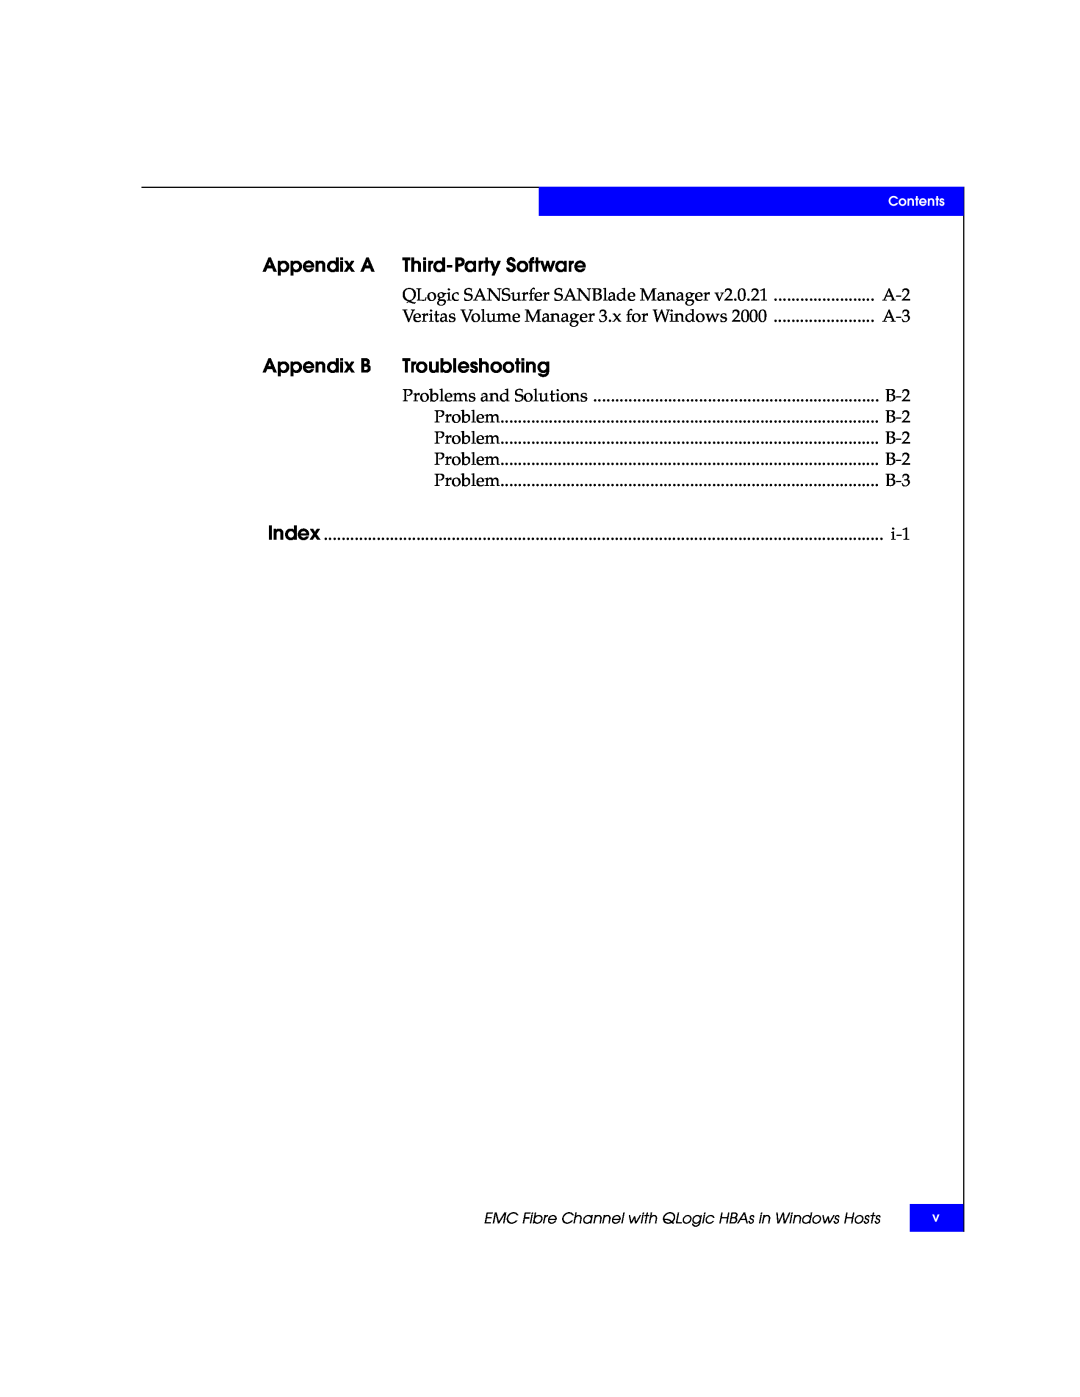 EMC QLA22xx, QLA23xx manual Appendix A Third-Party Software, Appendix B Troubleshooting 